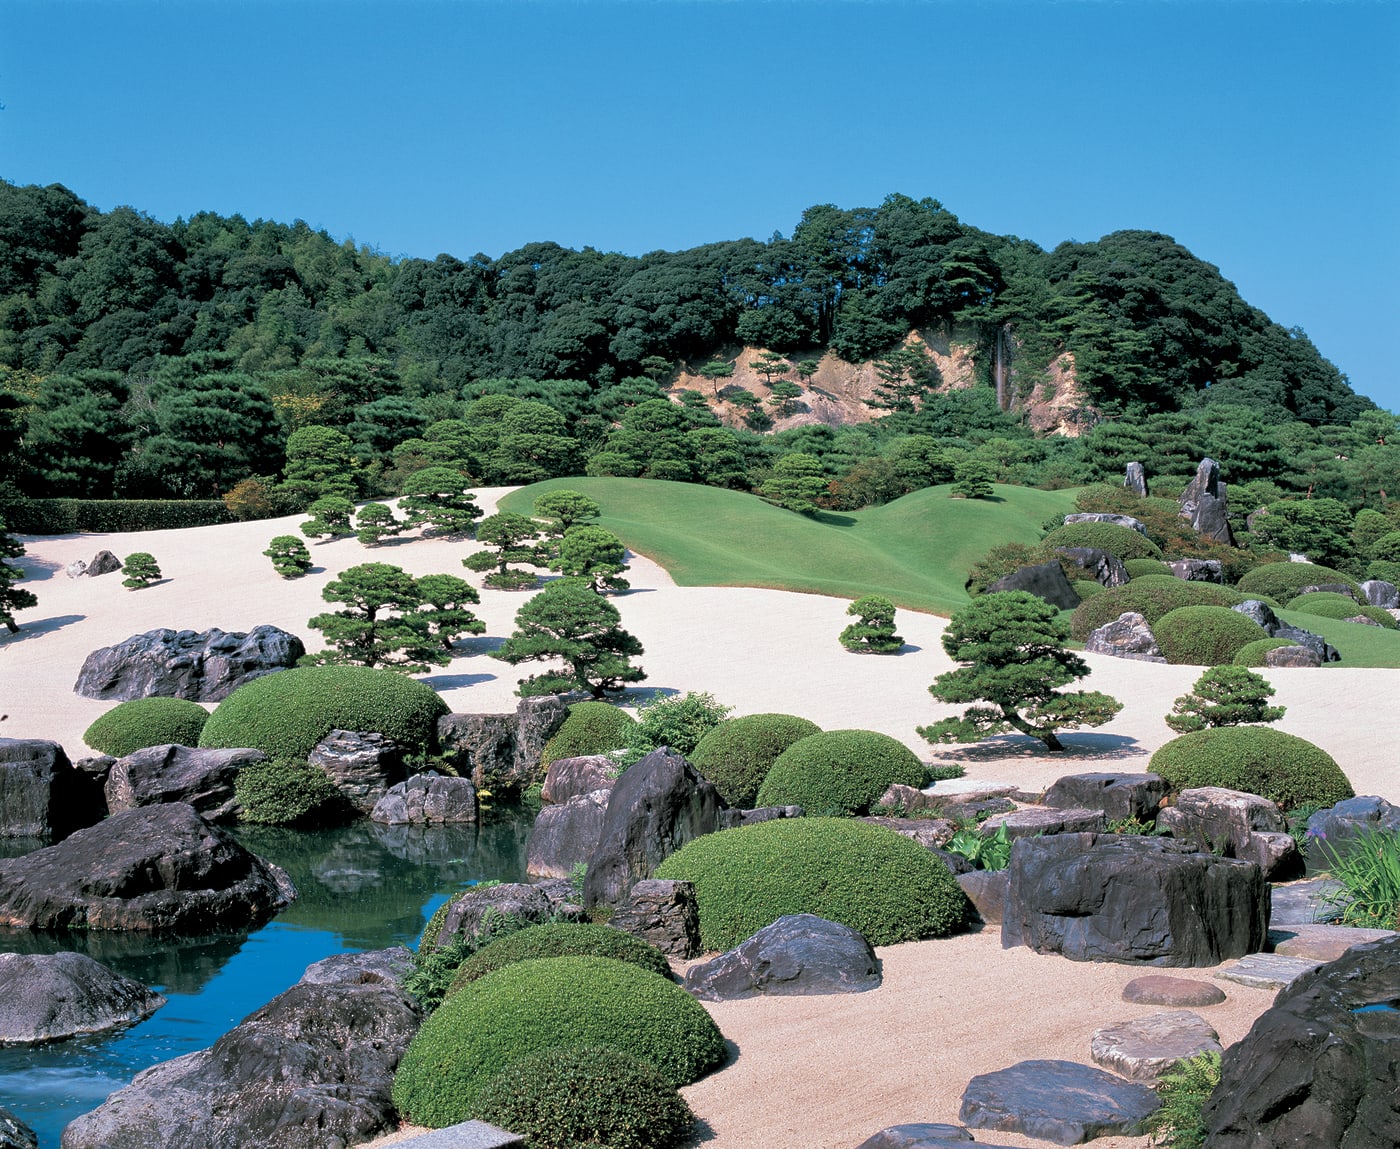 享譽國際的絕美日本庭園 足立美術館 Experiences In Japan